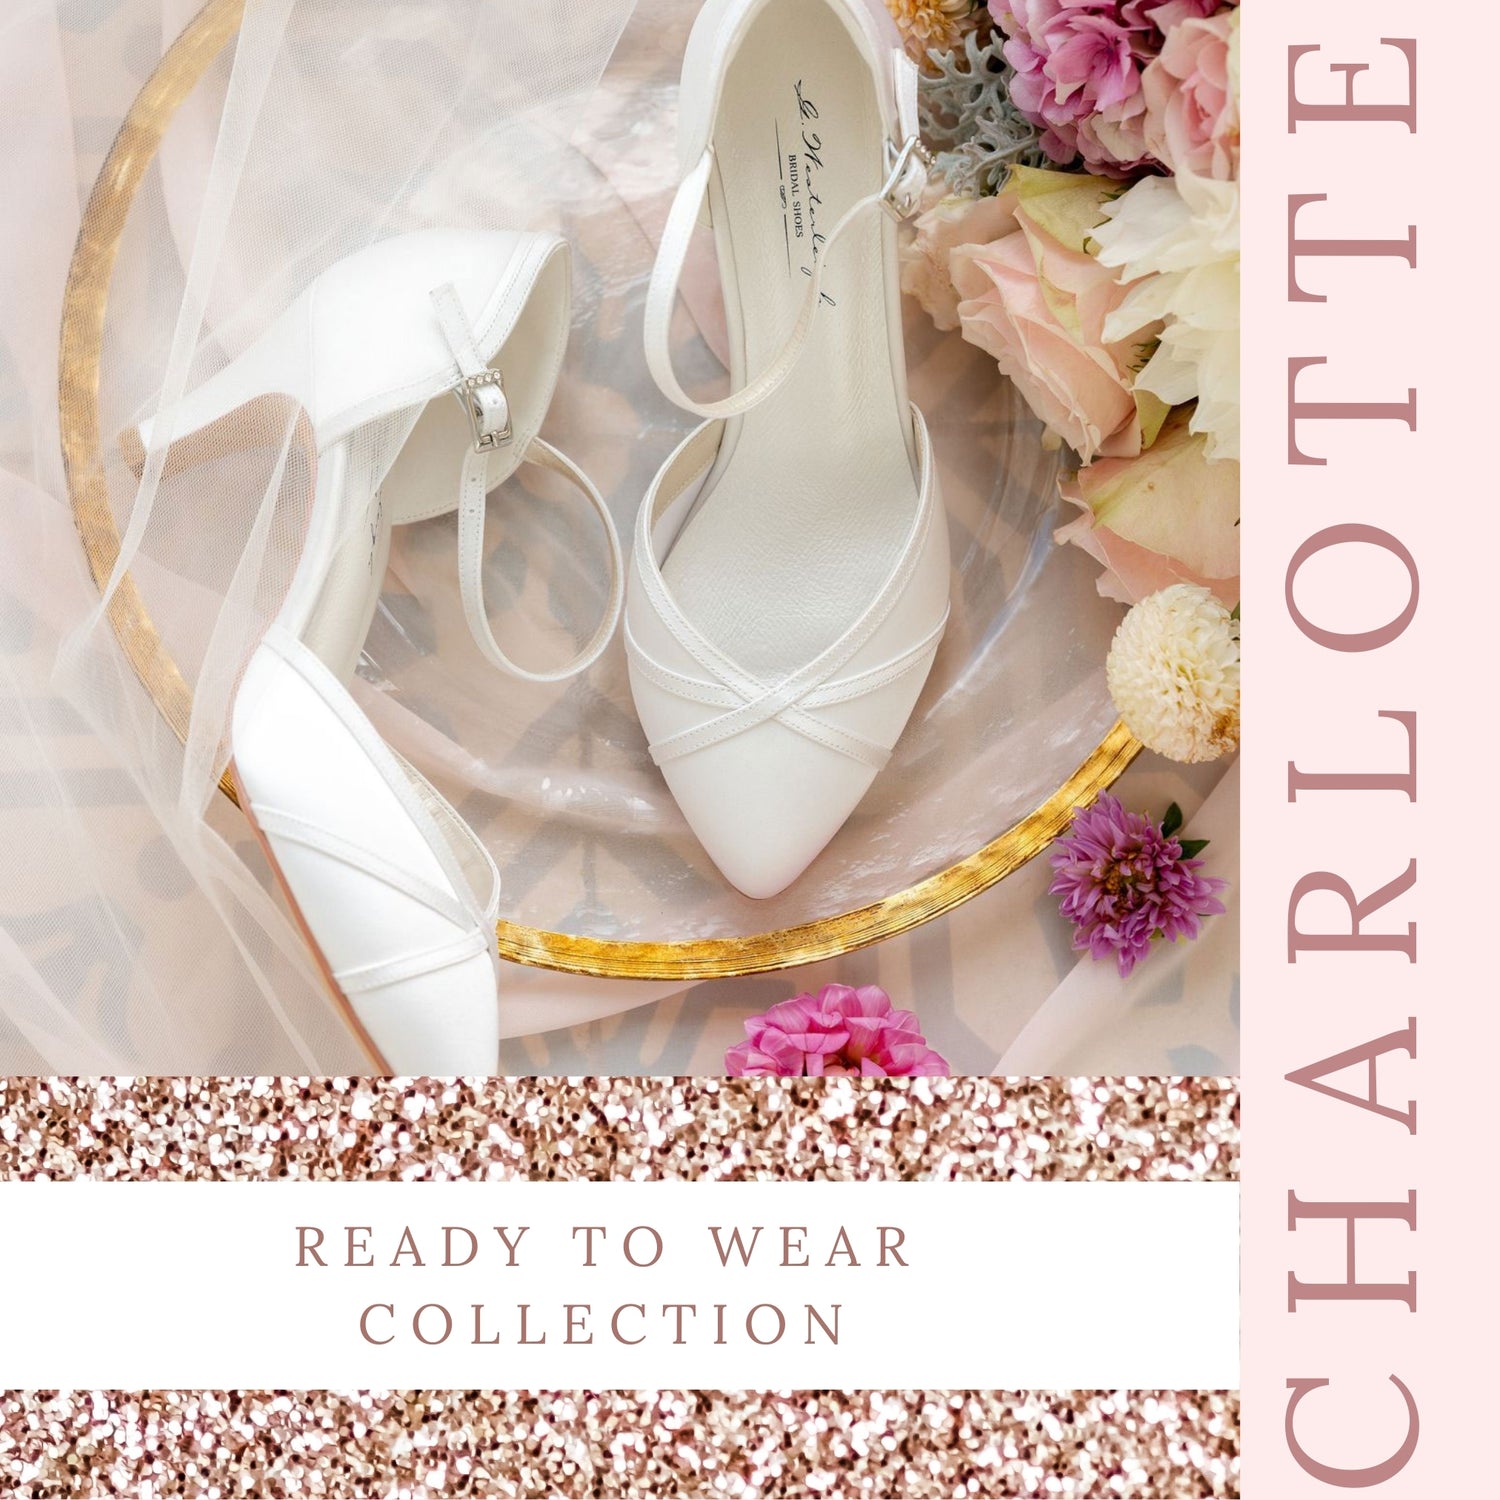 closed-toe-bridal-heels